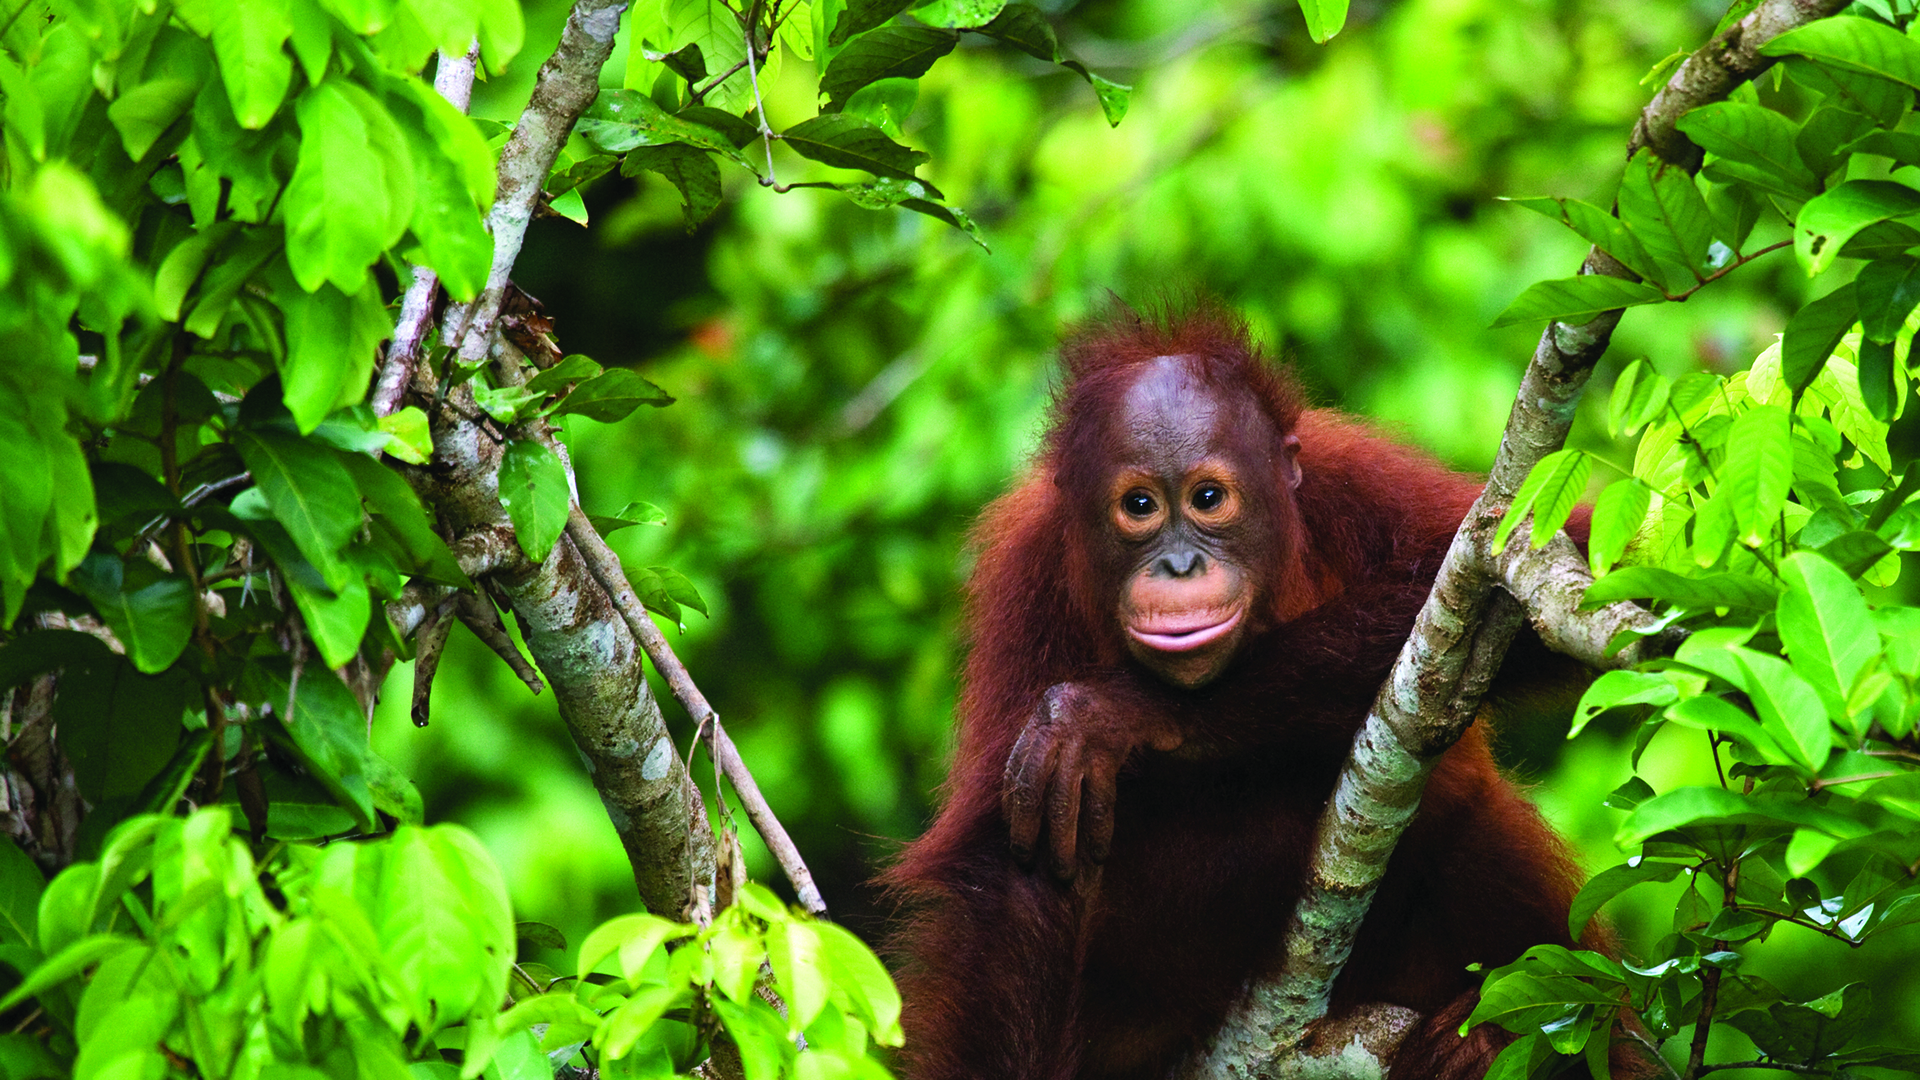 An orangutan sitting in luscious green treetops